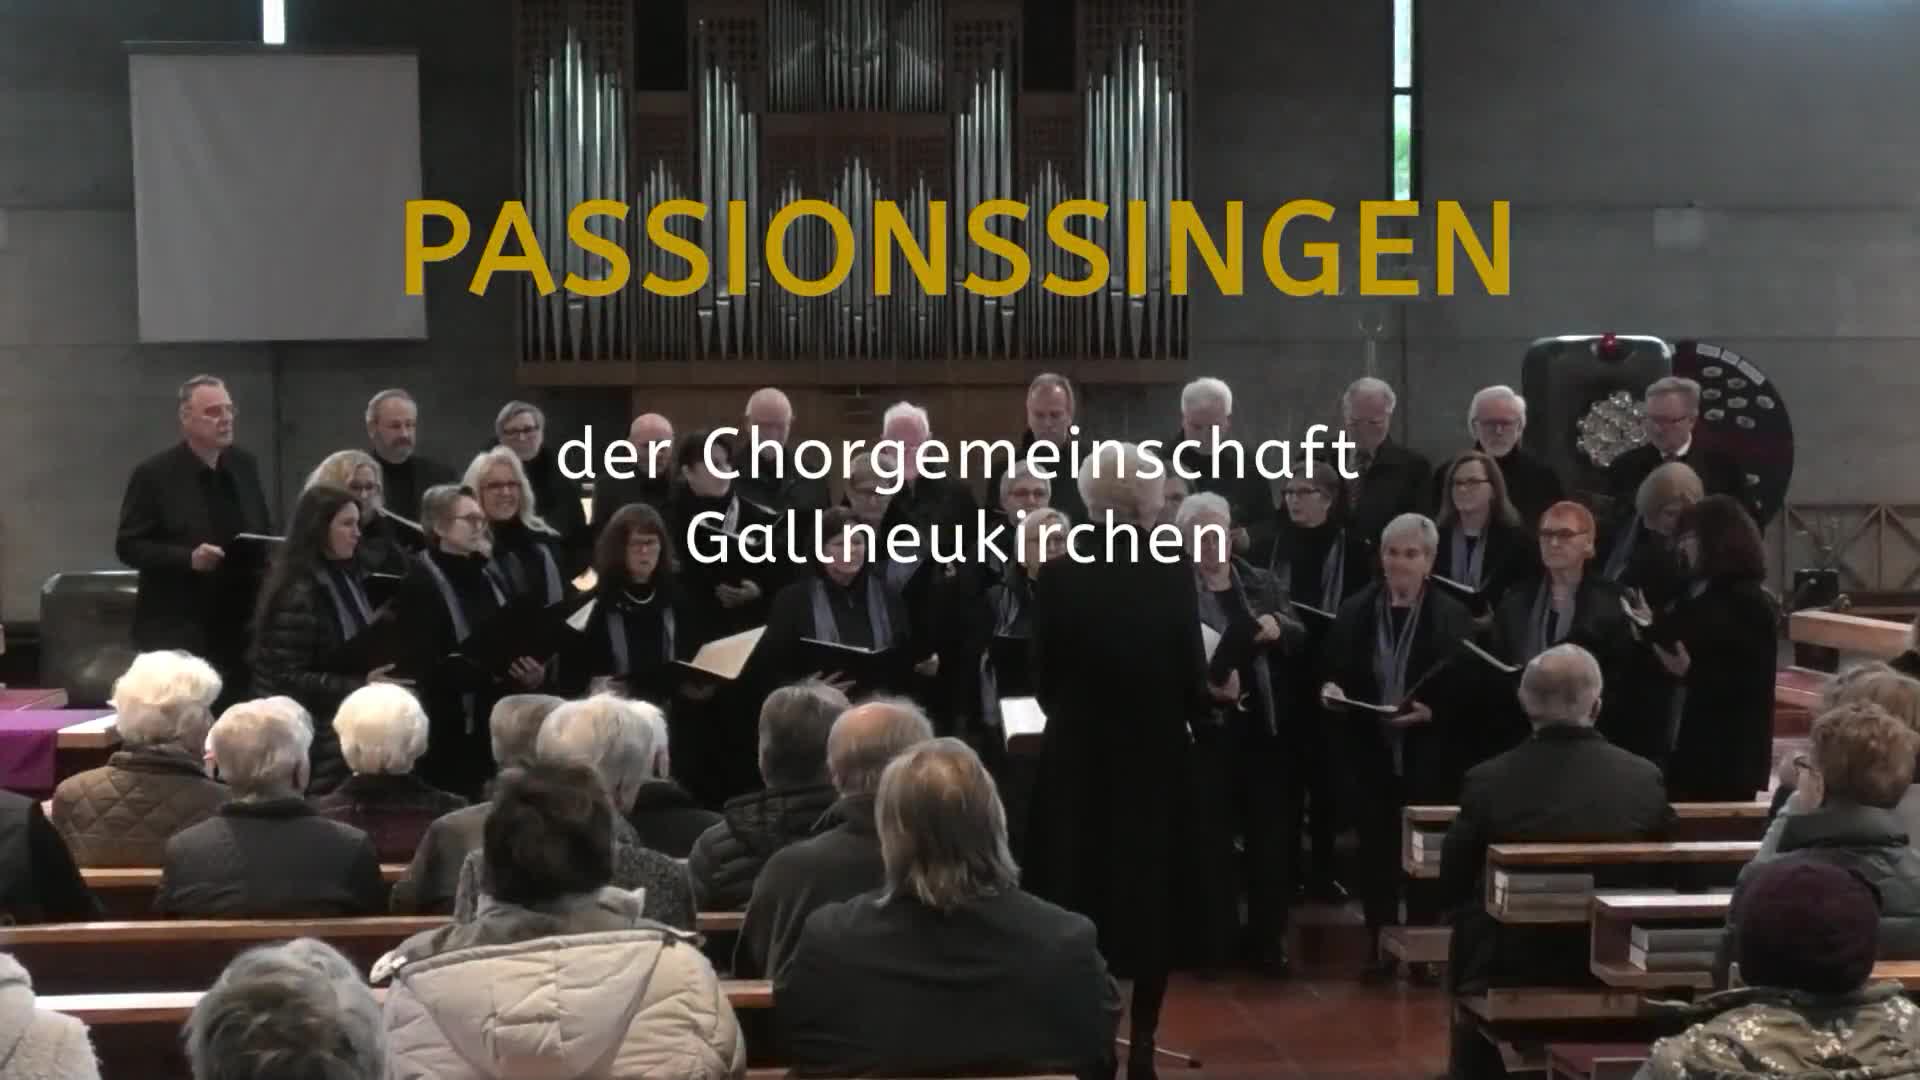 Passionssingen der Chorgemeinschaft Gallneukirchen